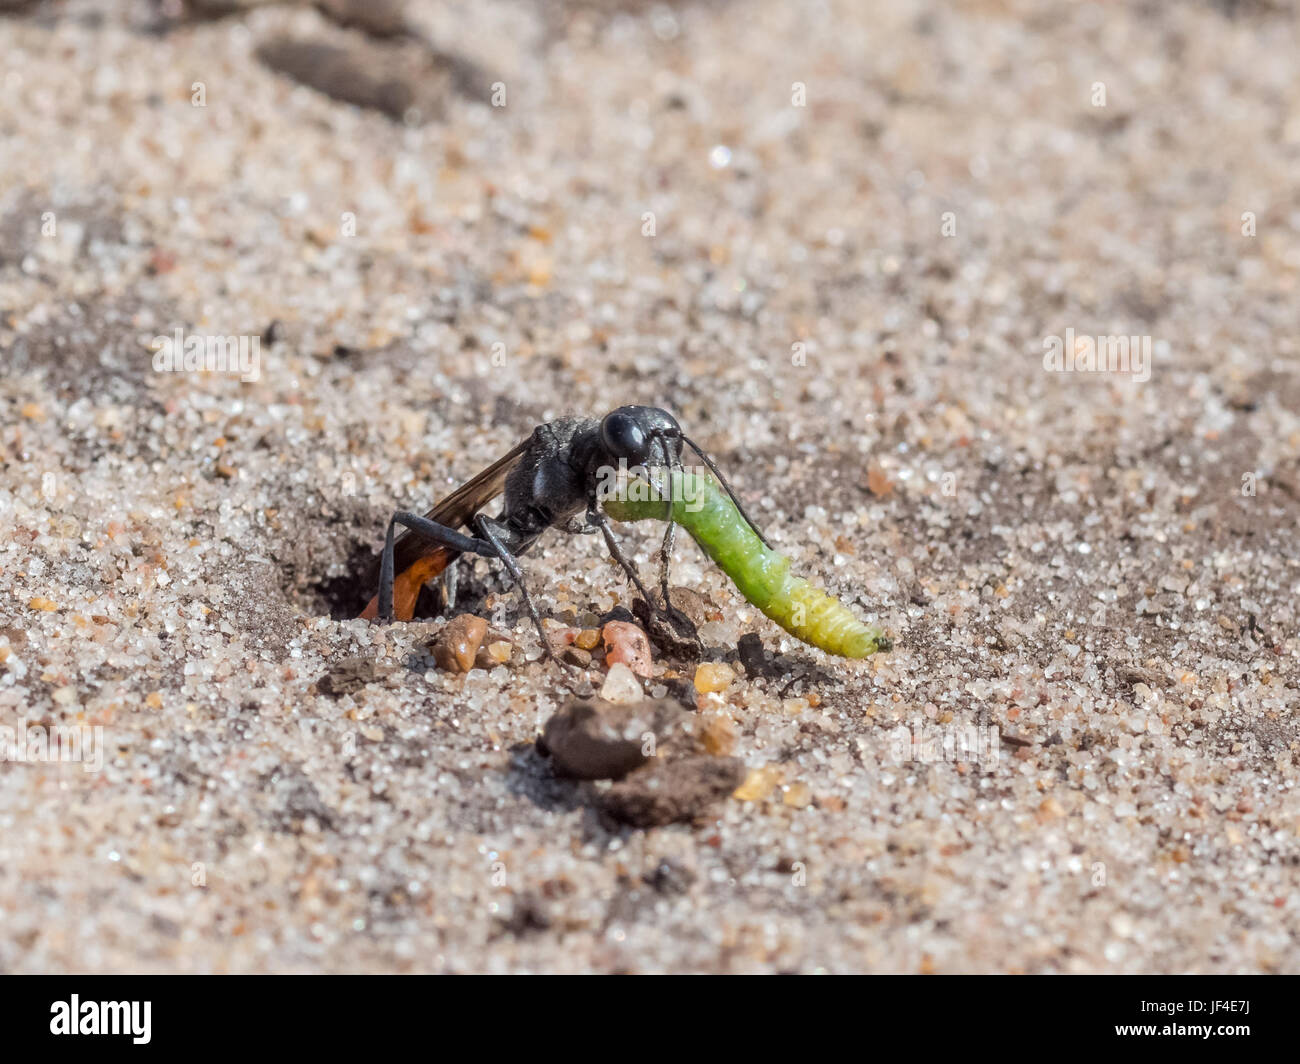 Sable Heath (Guêpe Ammophila pubescens) larve tirant dans ses proies grub terrier de sable au stock de nourriture Banque D'Images